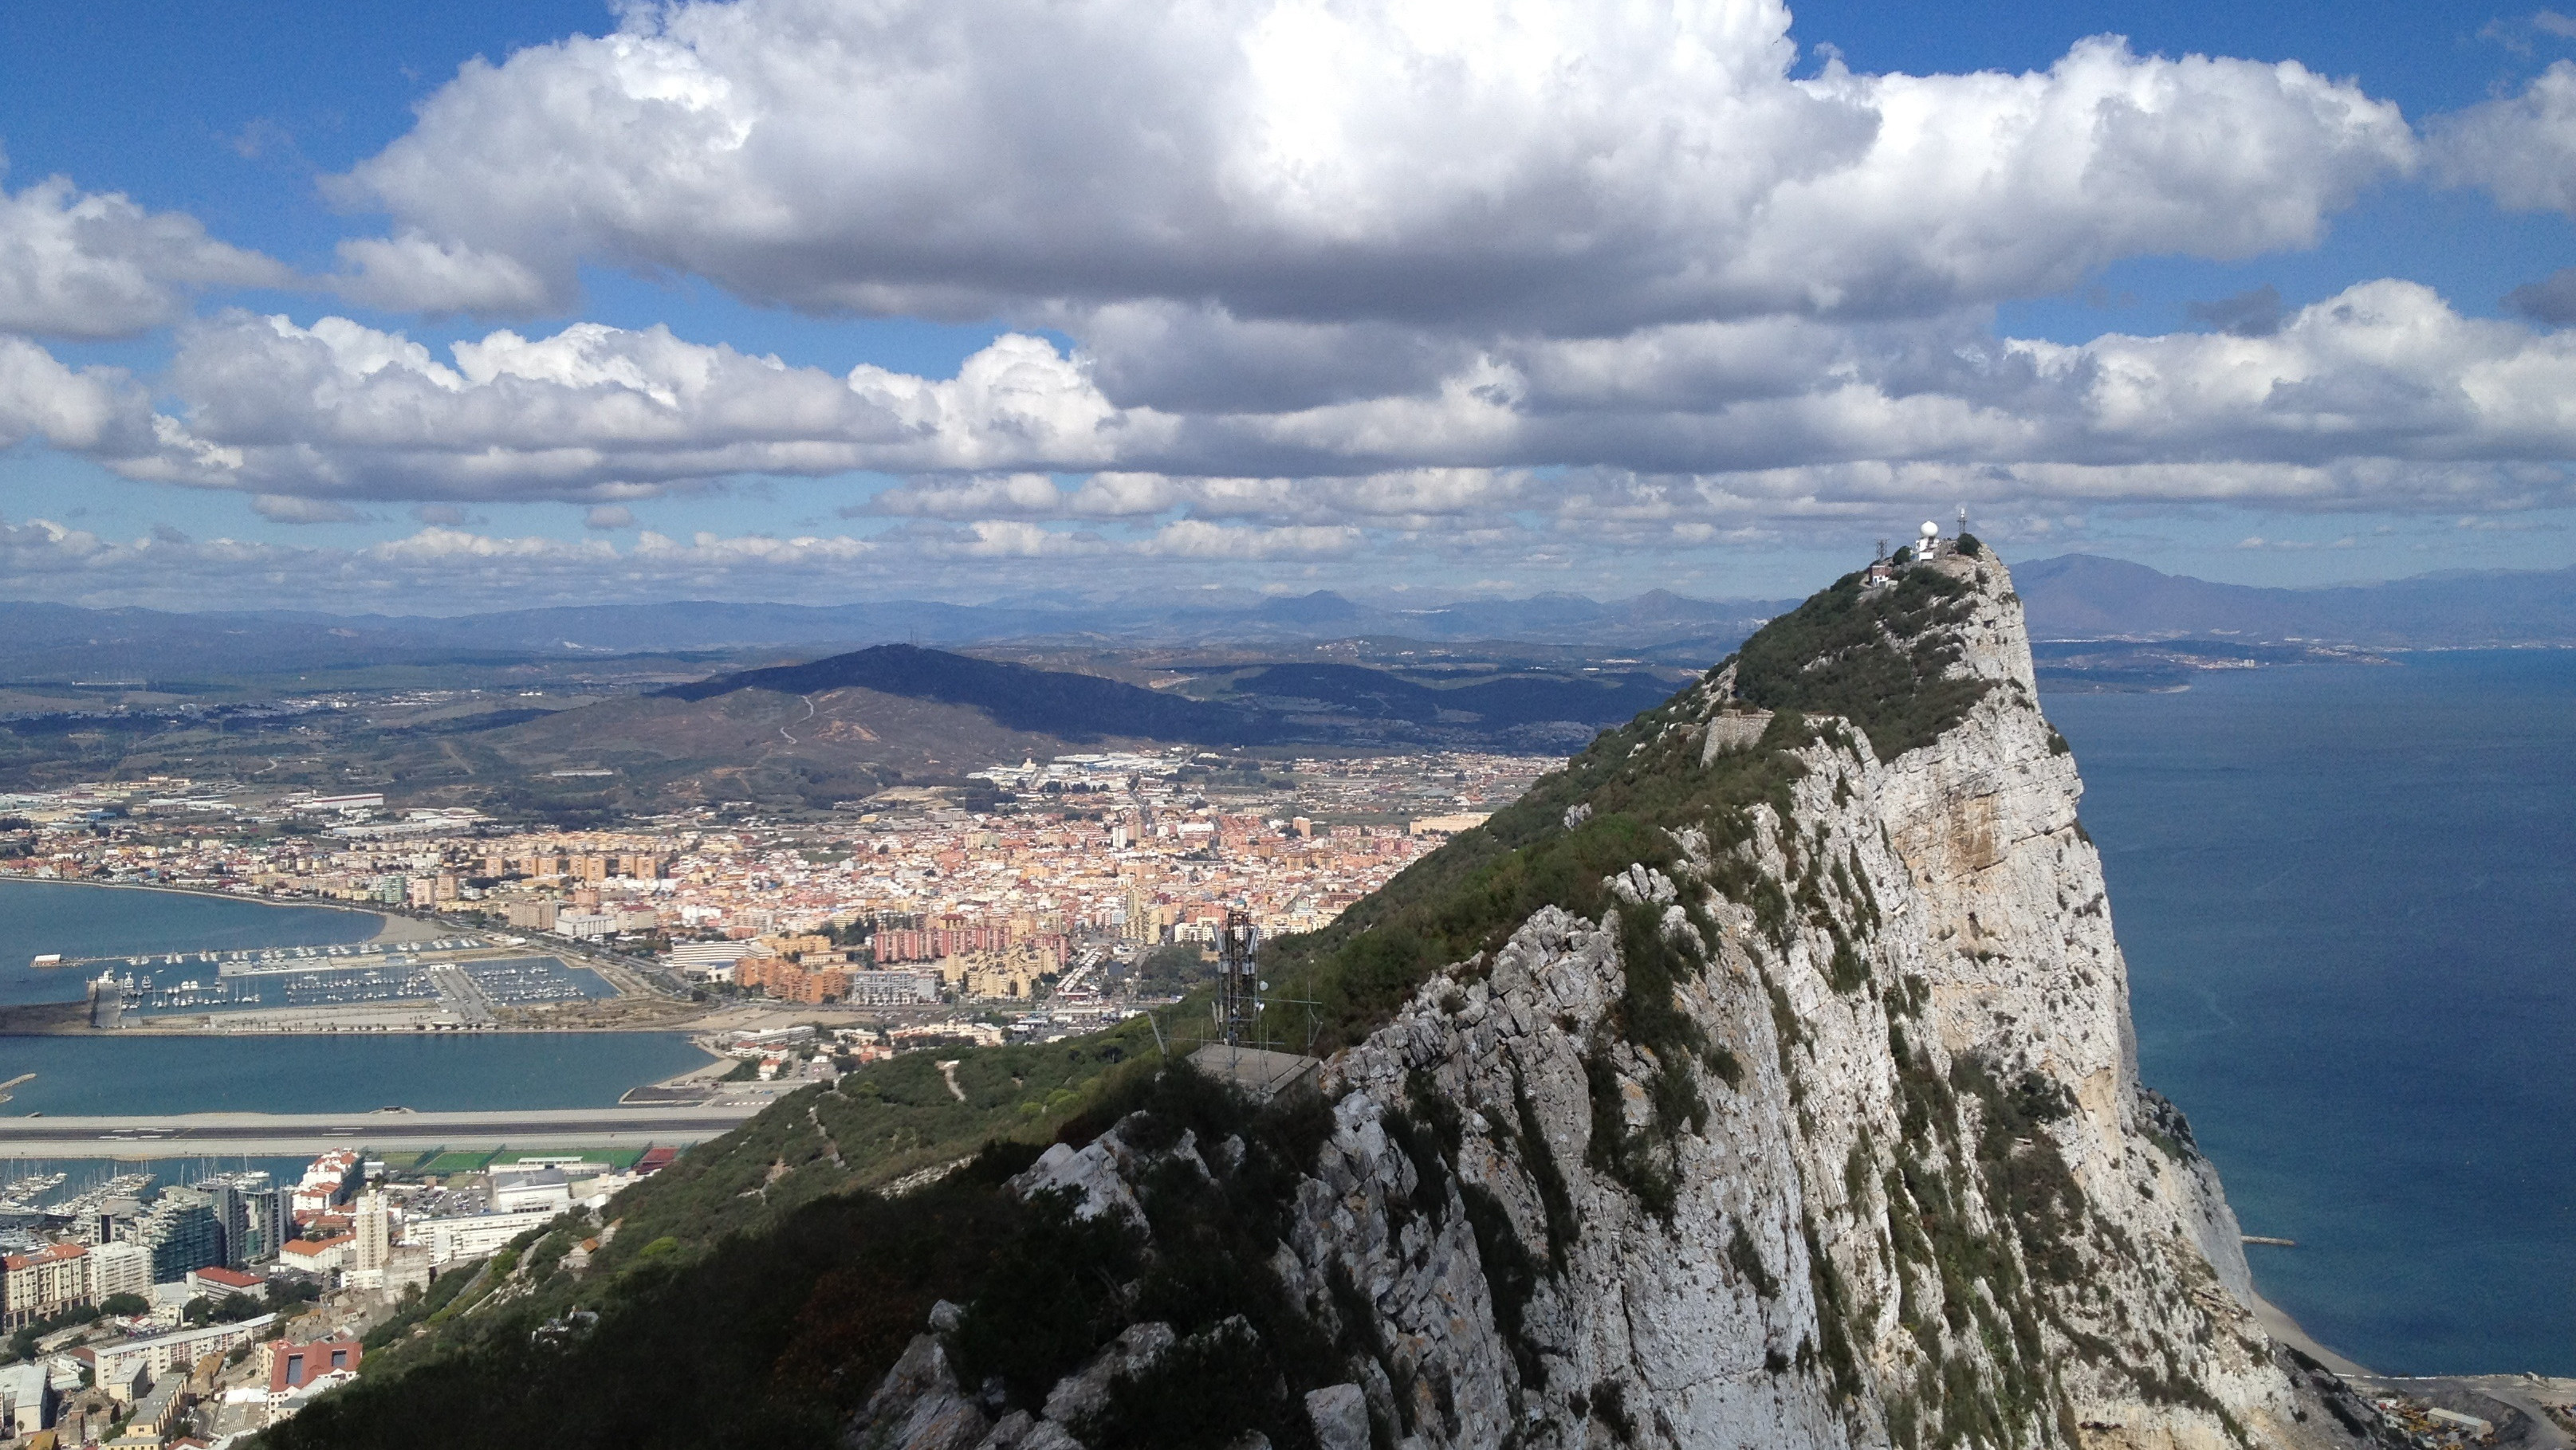 Roce diplomático entre España y Gibraltar por un plan urbanístico al este del Peñón, cerca de Marruecos